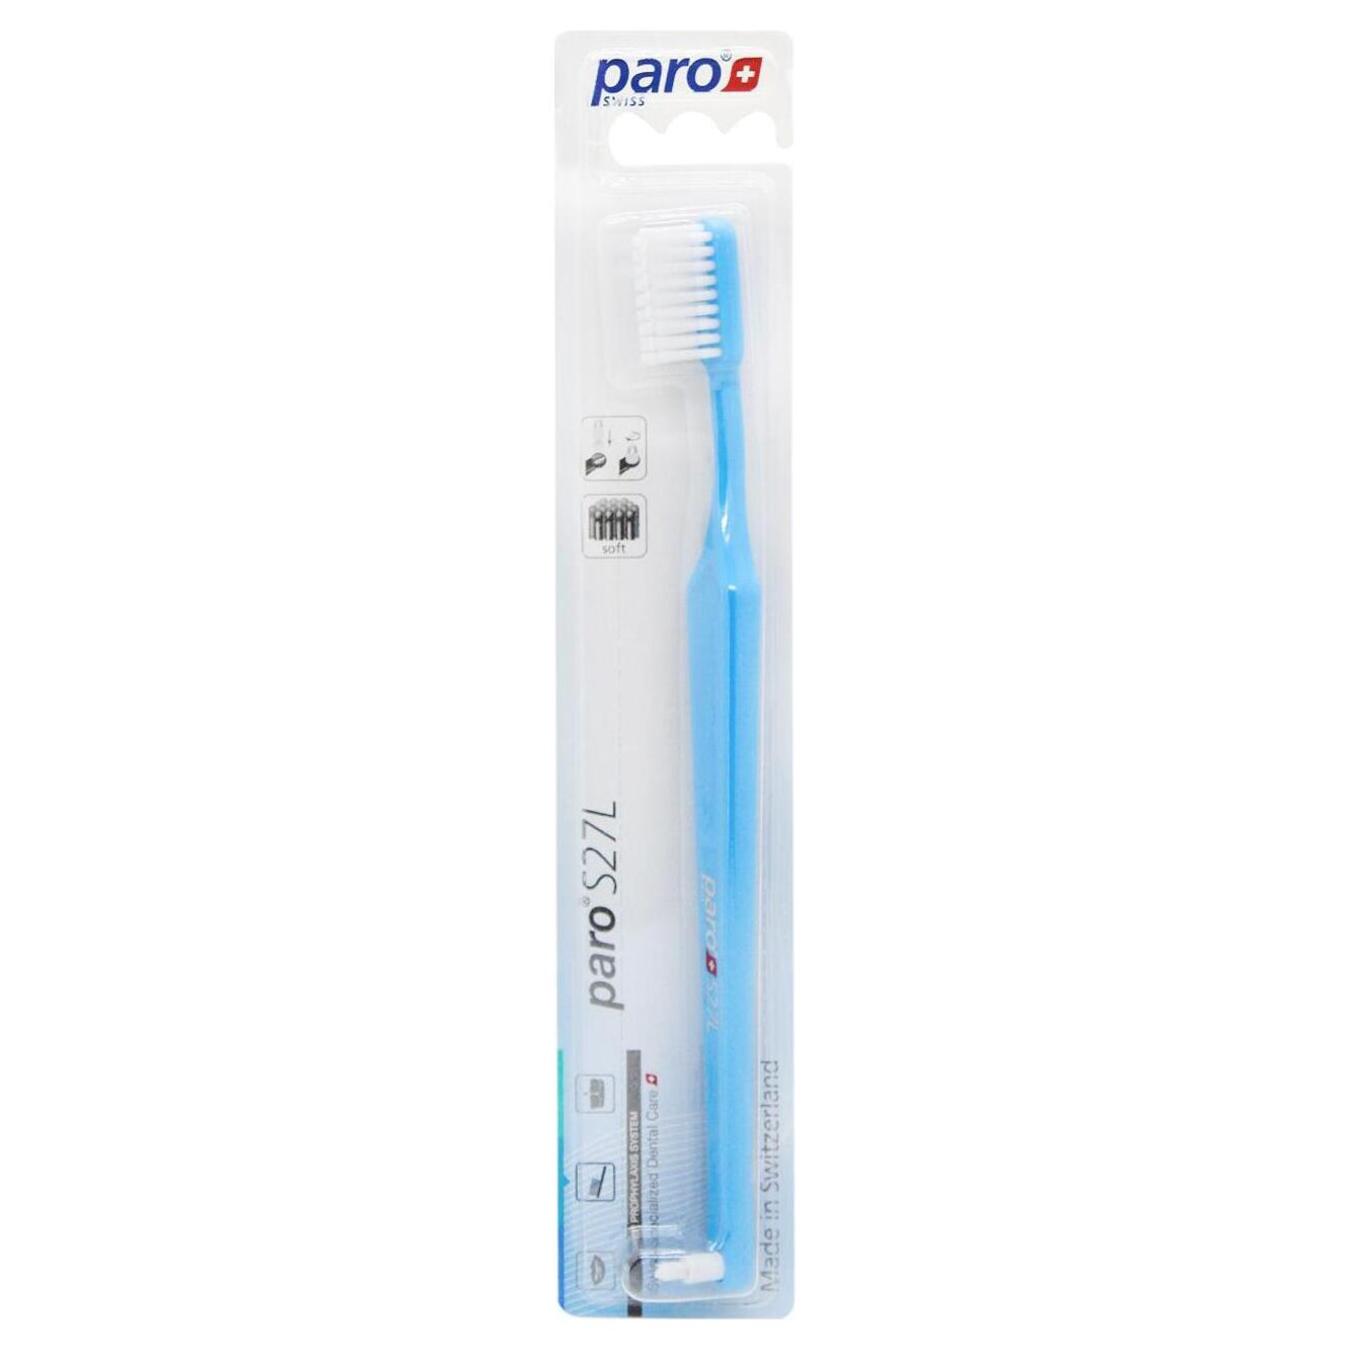 Toothbrush Paro soft 27 bundles of bristles 3 rows with monobundle nozzle S27L blue